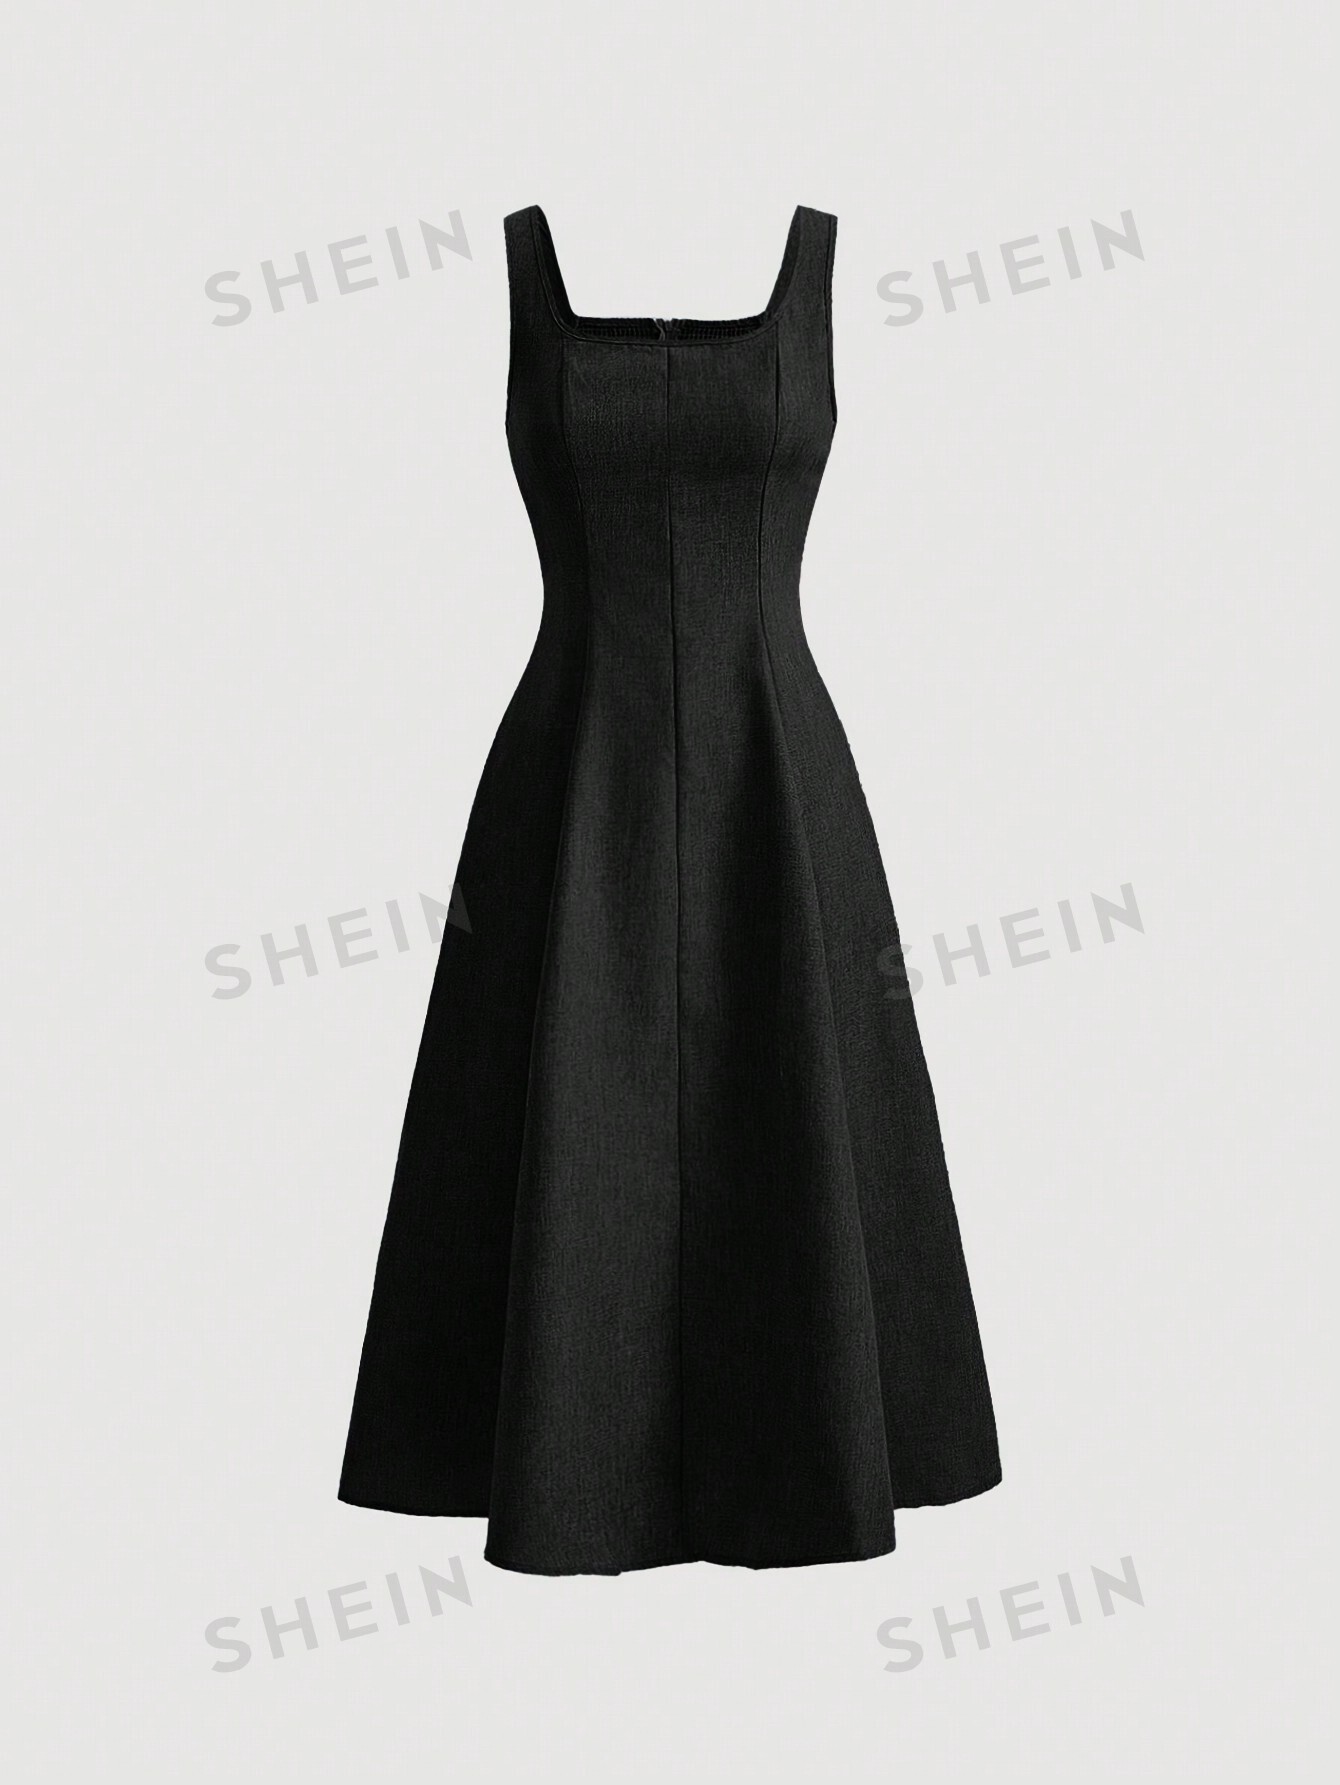 SHEIN MOD однотонное платье с гофрированной спиной и расклешенным подолом, черный фото